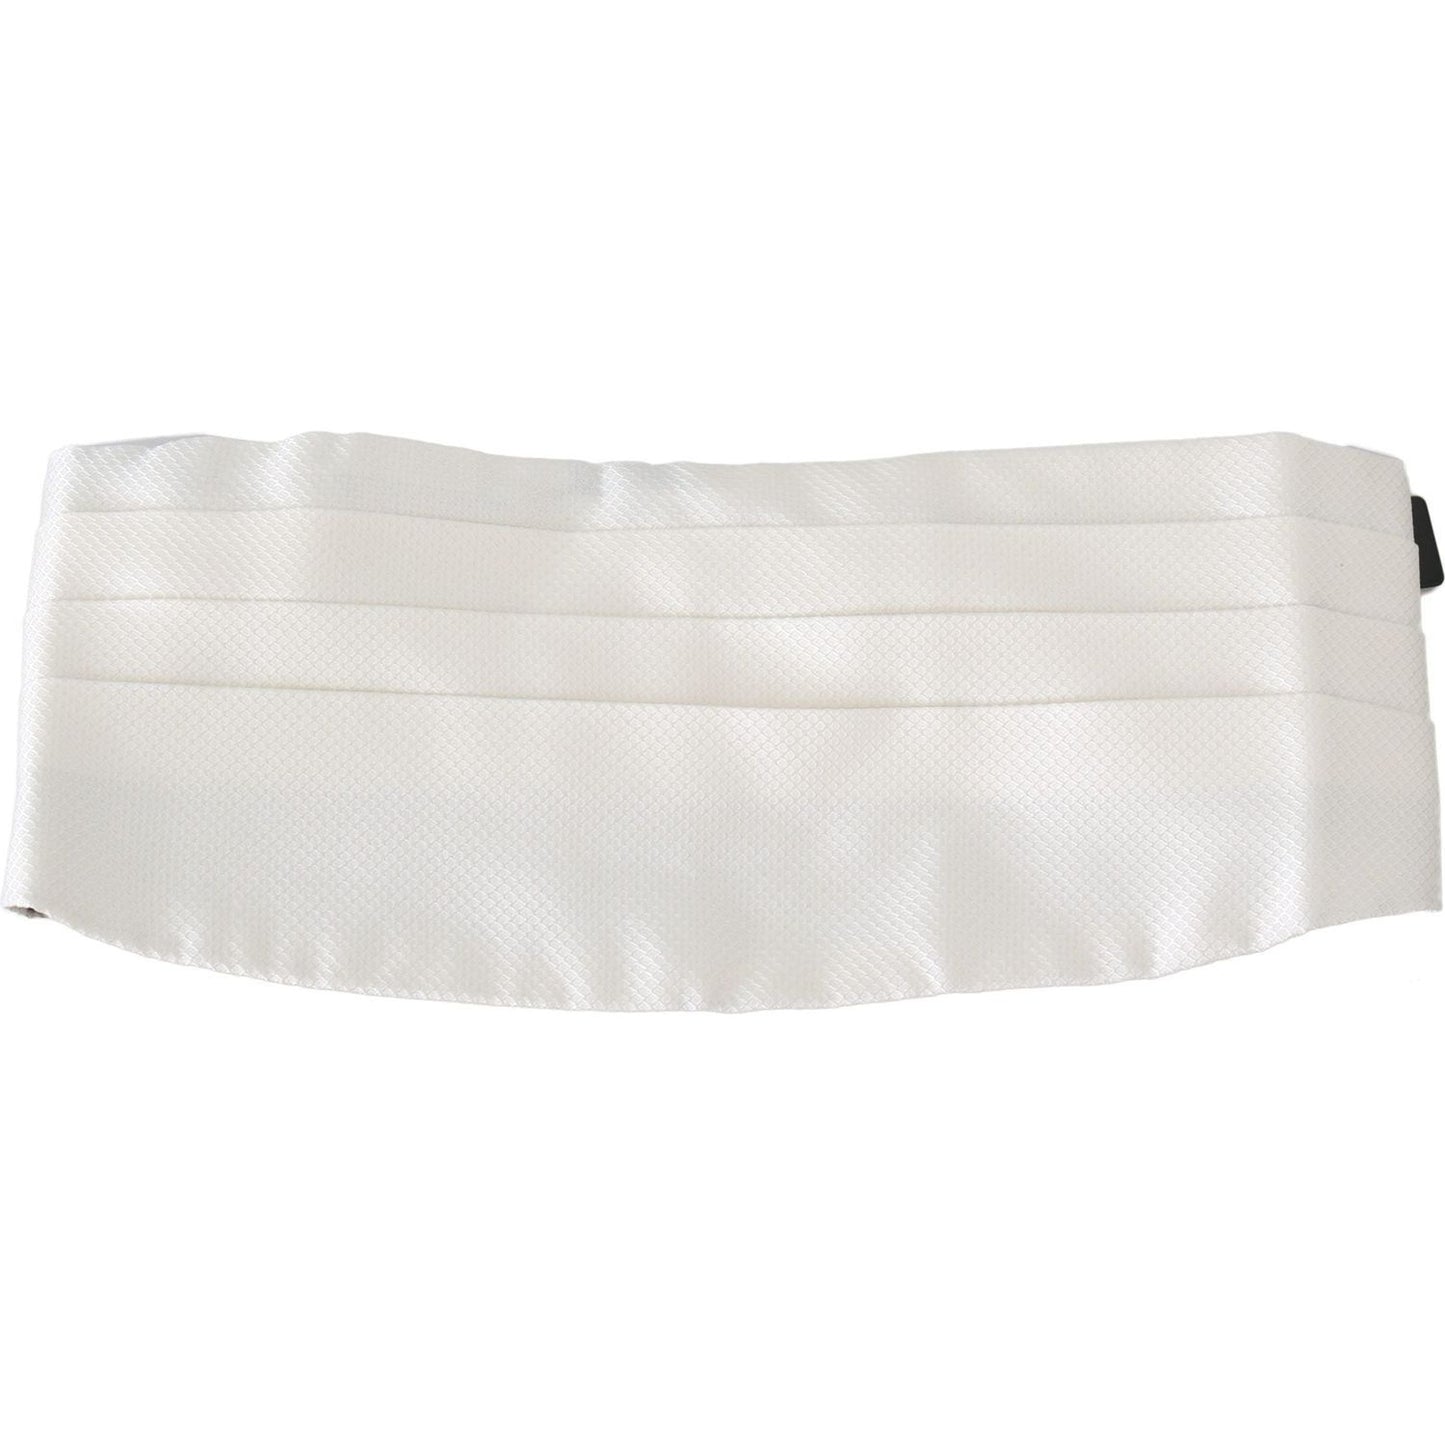 Dolce & Gabbana Elegant Silk White Patterned Cummerbund white-men-waist-belt-100-silk-cummerbund-1 IMG_2170-scaled-1781d998-a1a.jpg